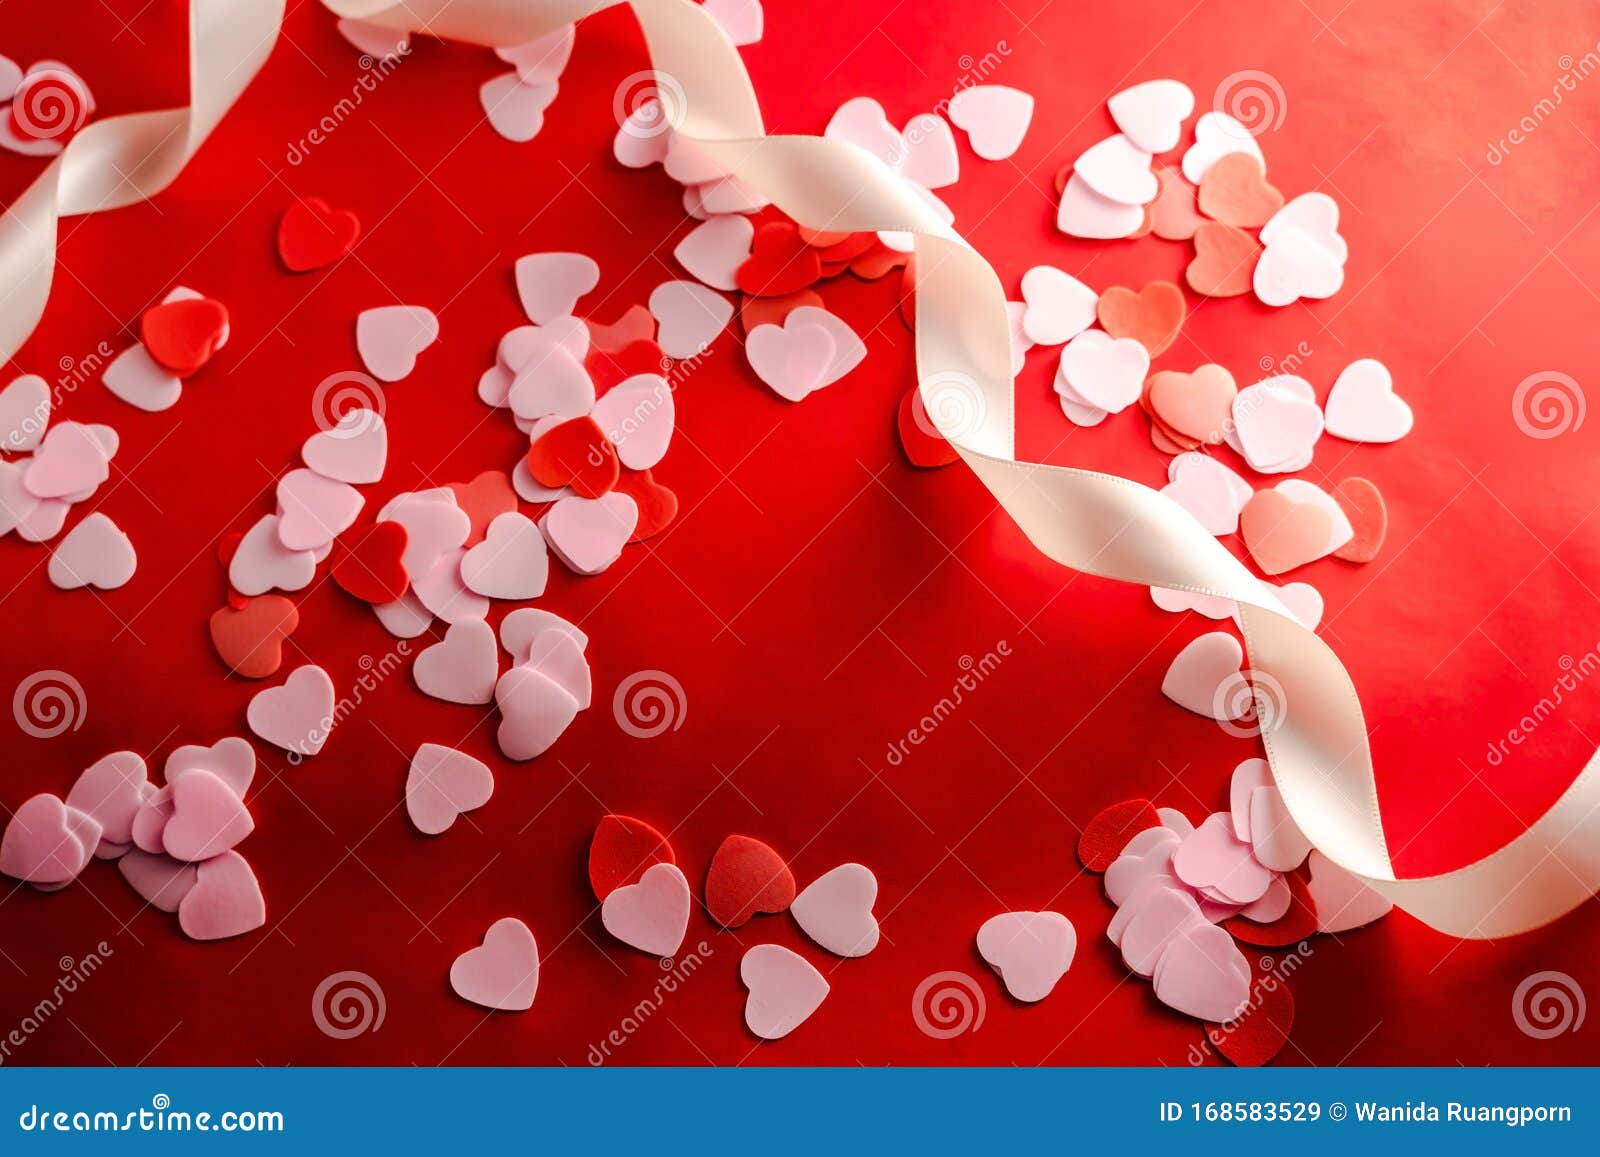 Ngày lễ Valentine sắp tới rồi! Mùa yêu thương lại đến và hãy cùng nhau chia sẻ bản tình ca của mình bằng những trái tim đỏ tươi ngộ nghĩnh trên hình ảnh này nhé!